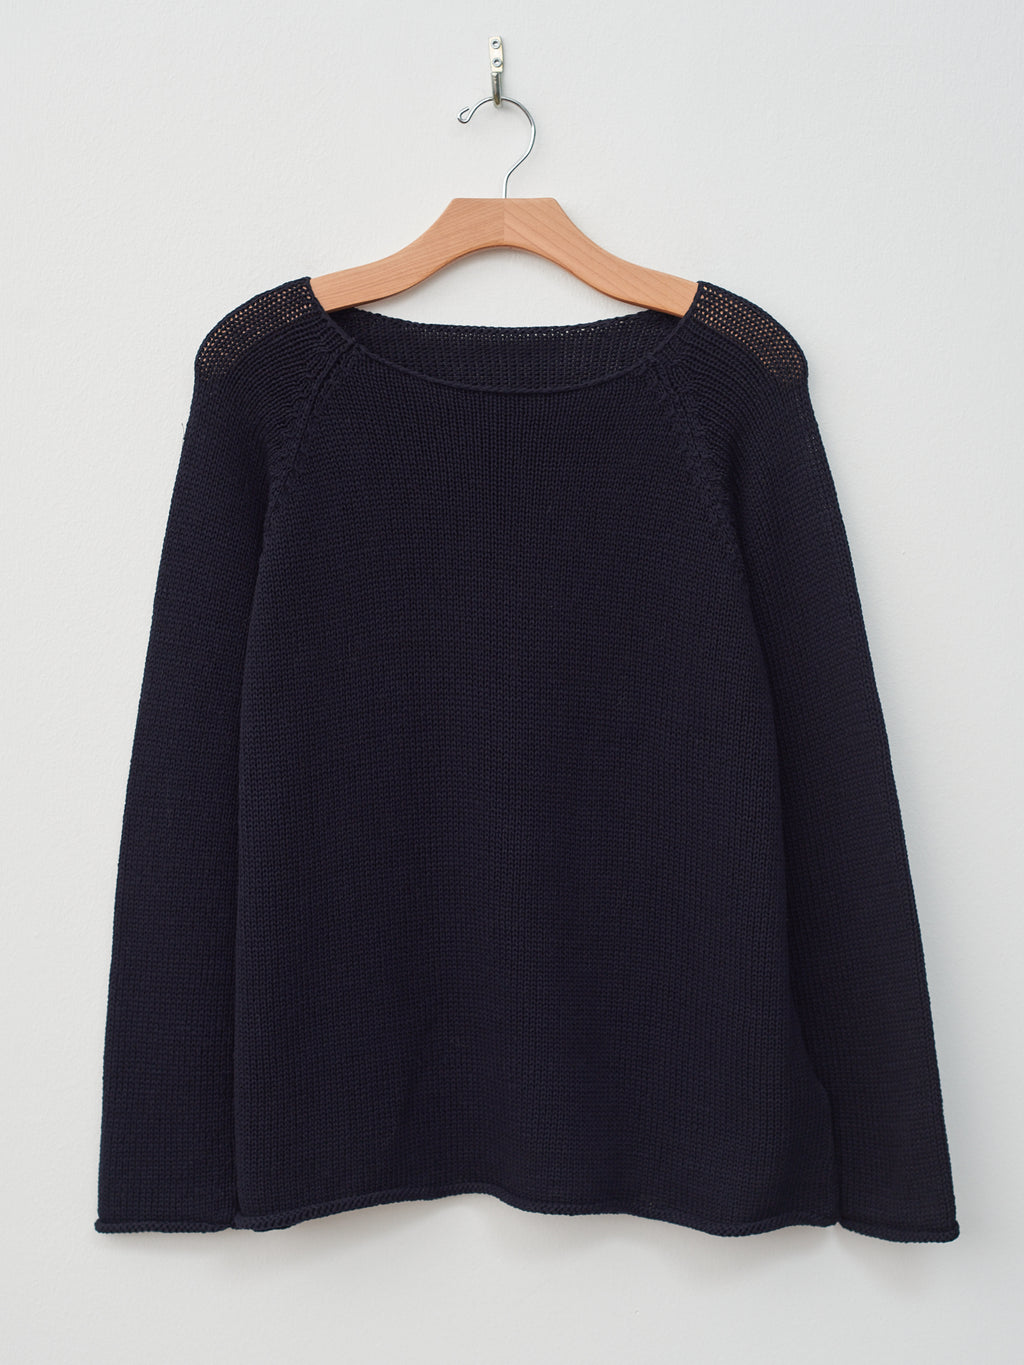 Namu Shop - Veritecoeur Cotton Silkette Pullover Knit - Dark Navy